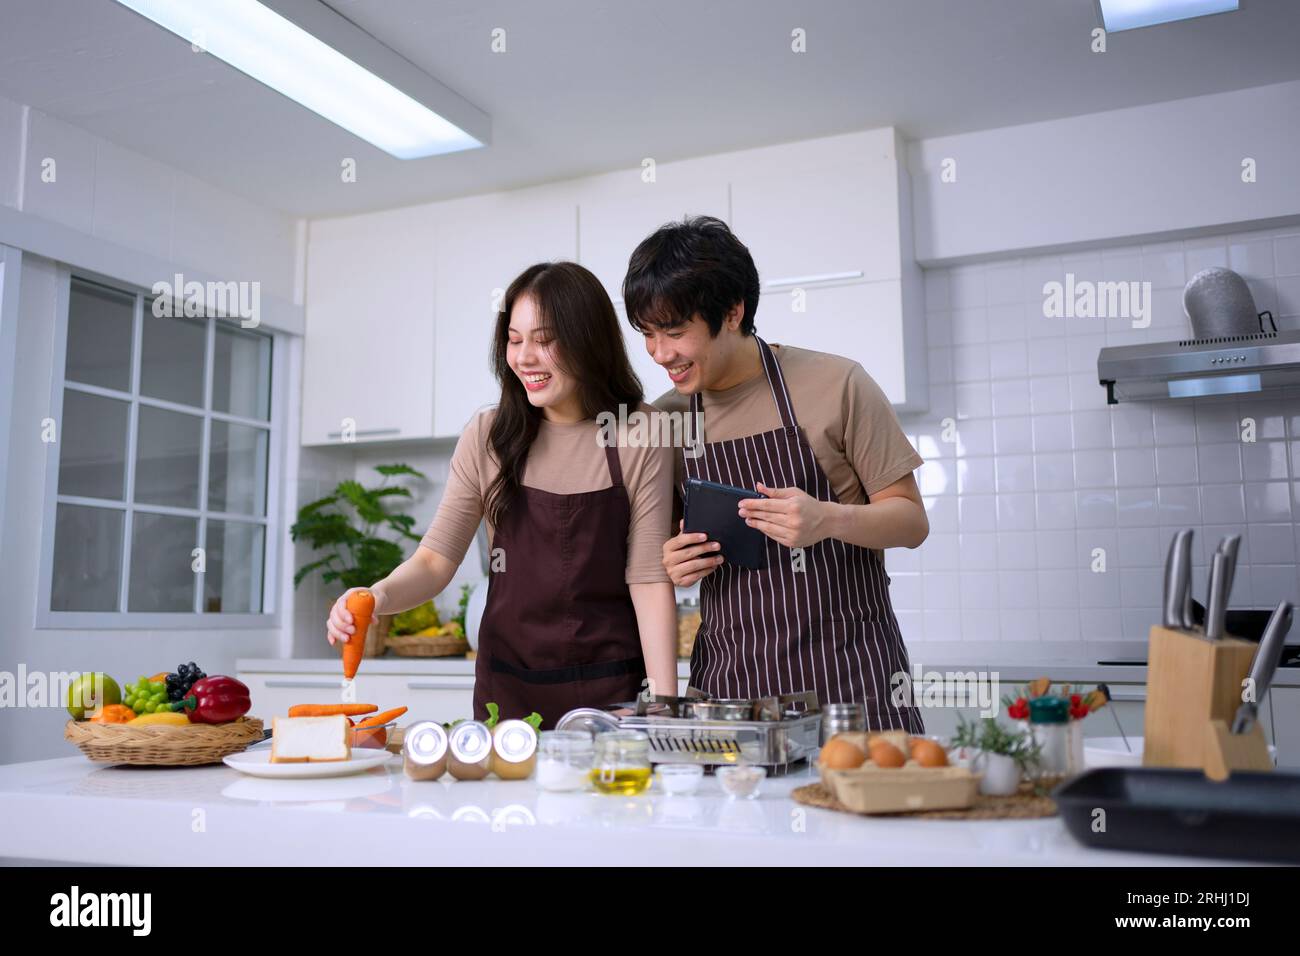 La giovane coppia sta trasmettendo in diretta in cucina. Stile di vita e attività ricreative. Foto Stock